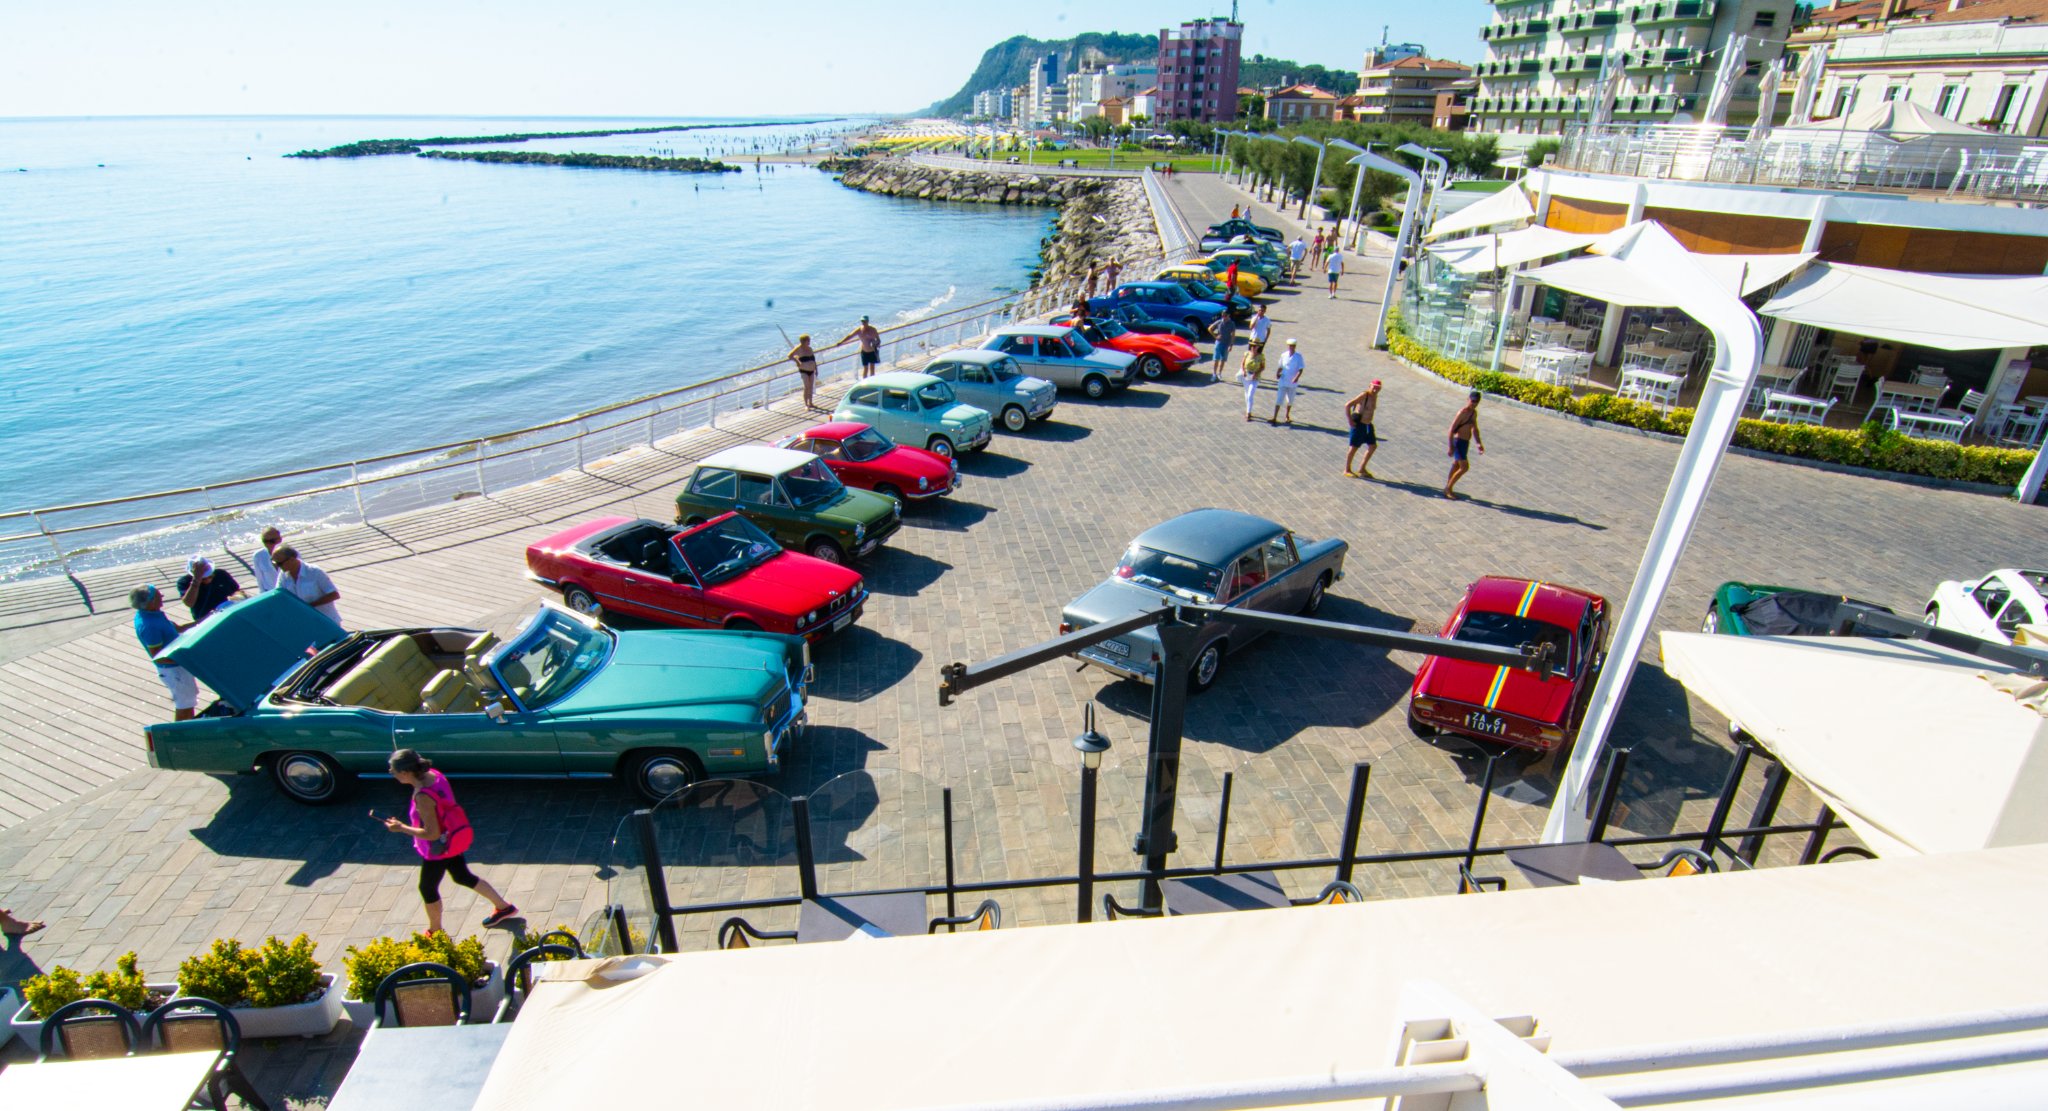 “INCONTRO D’ESTATE 3° EDIZIONE con la partecipazione del gruppo delle Fiat 600 (alcune arrivate dal Friuli)” –                                     Domenica 3 Luglio 2022